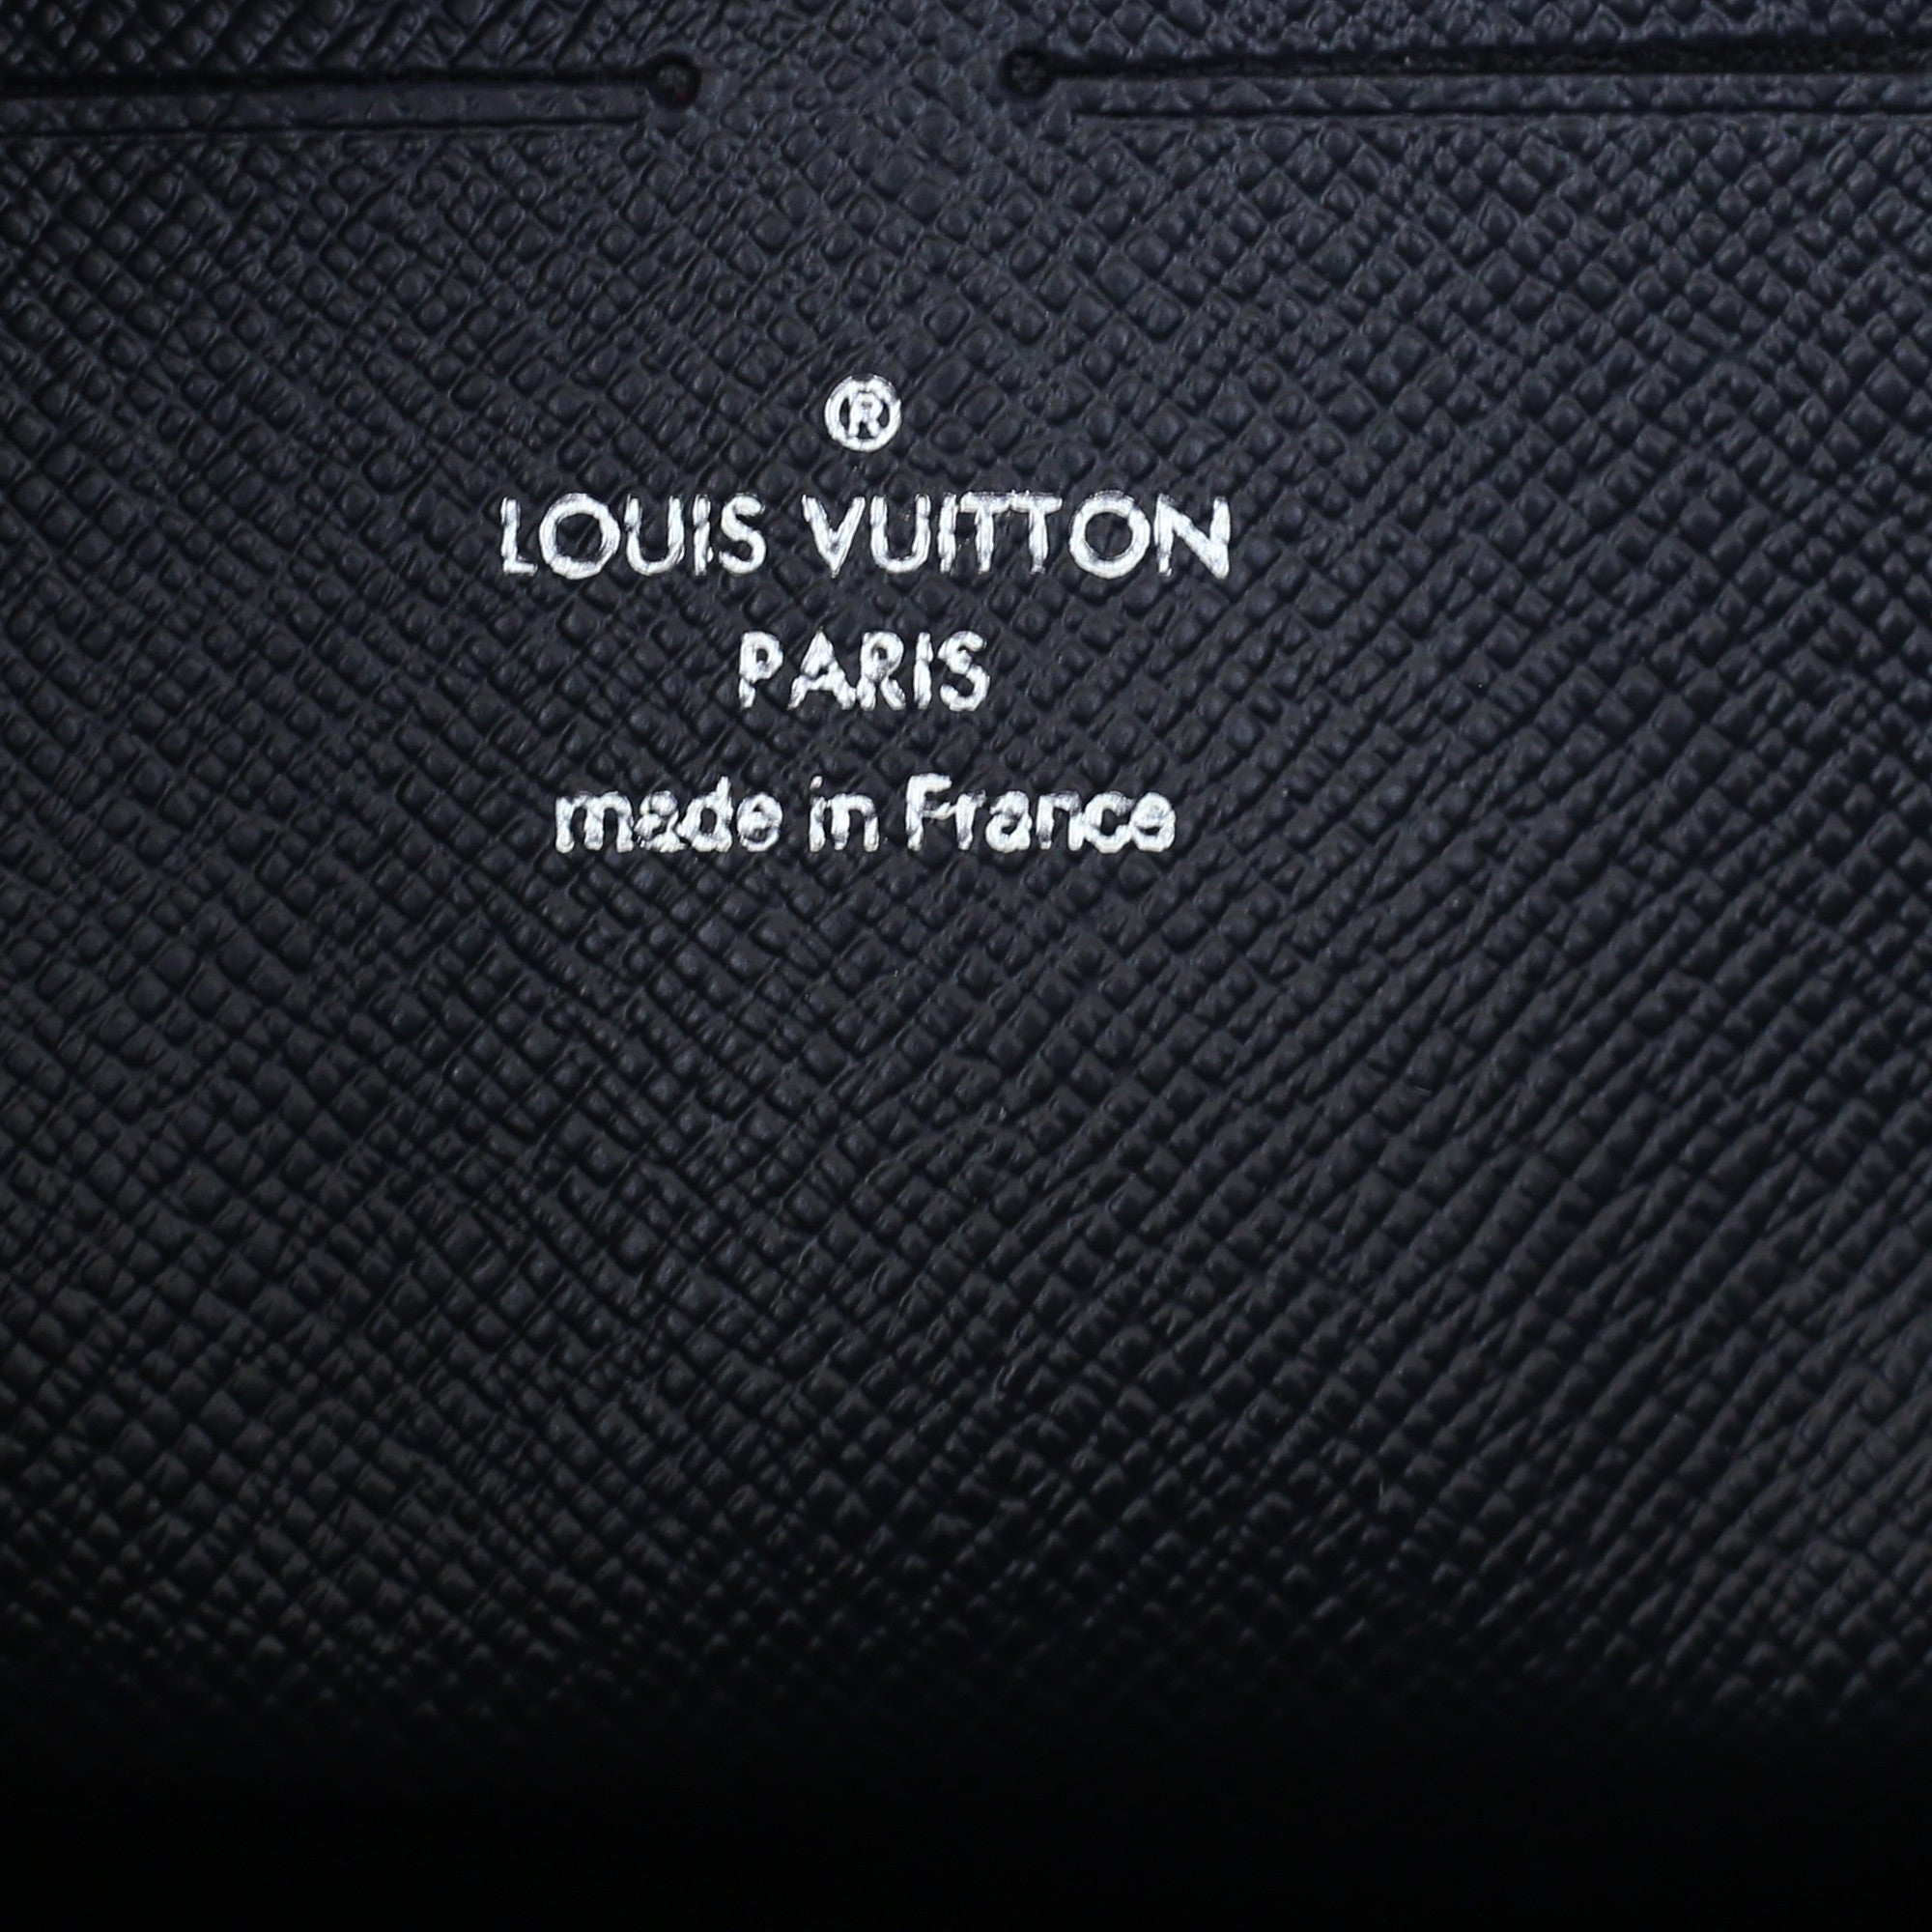 Louis Vuitton, Chapman Pochette Voyage